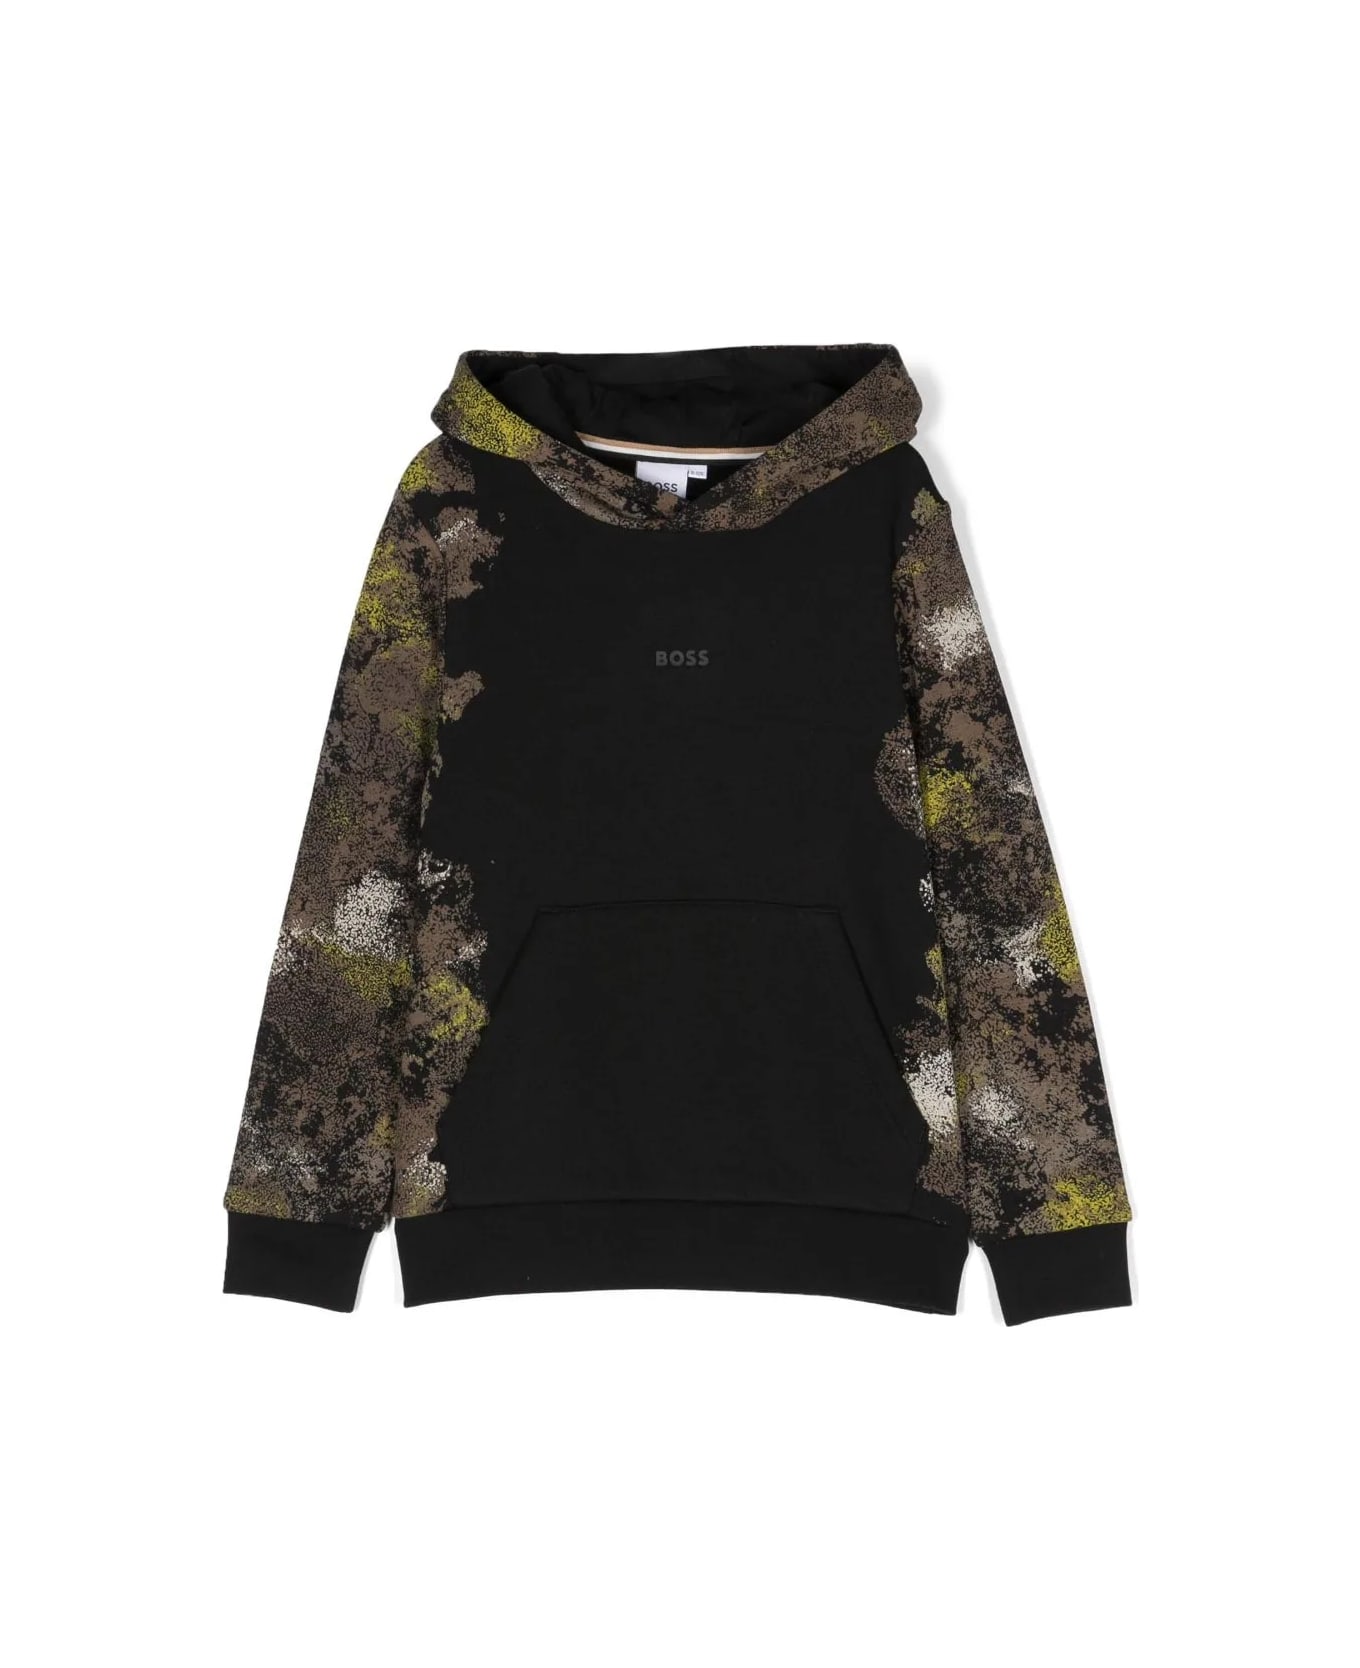 Hugo Boss Sweatshirt With Camouflage Print - Black